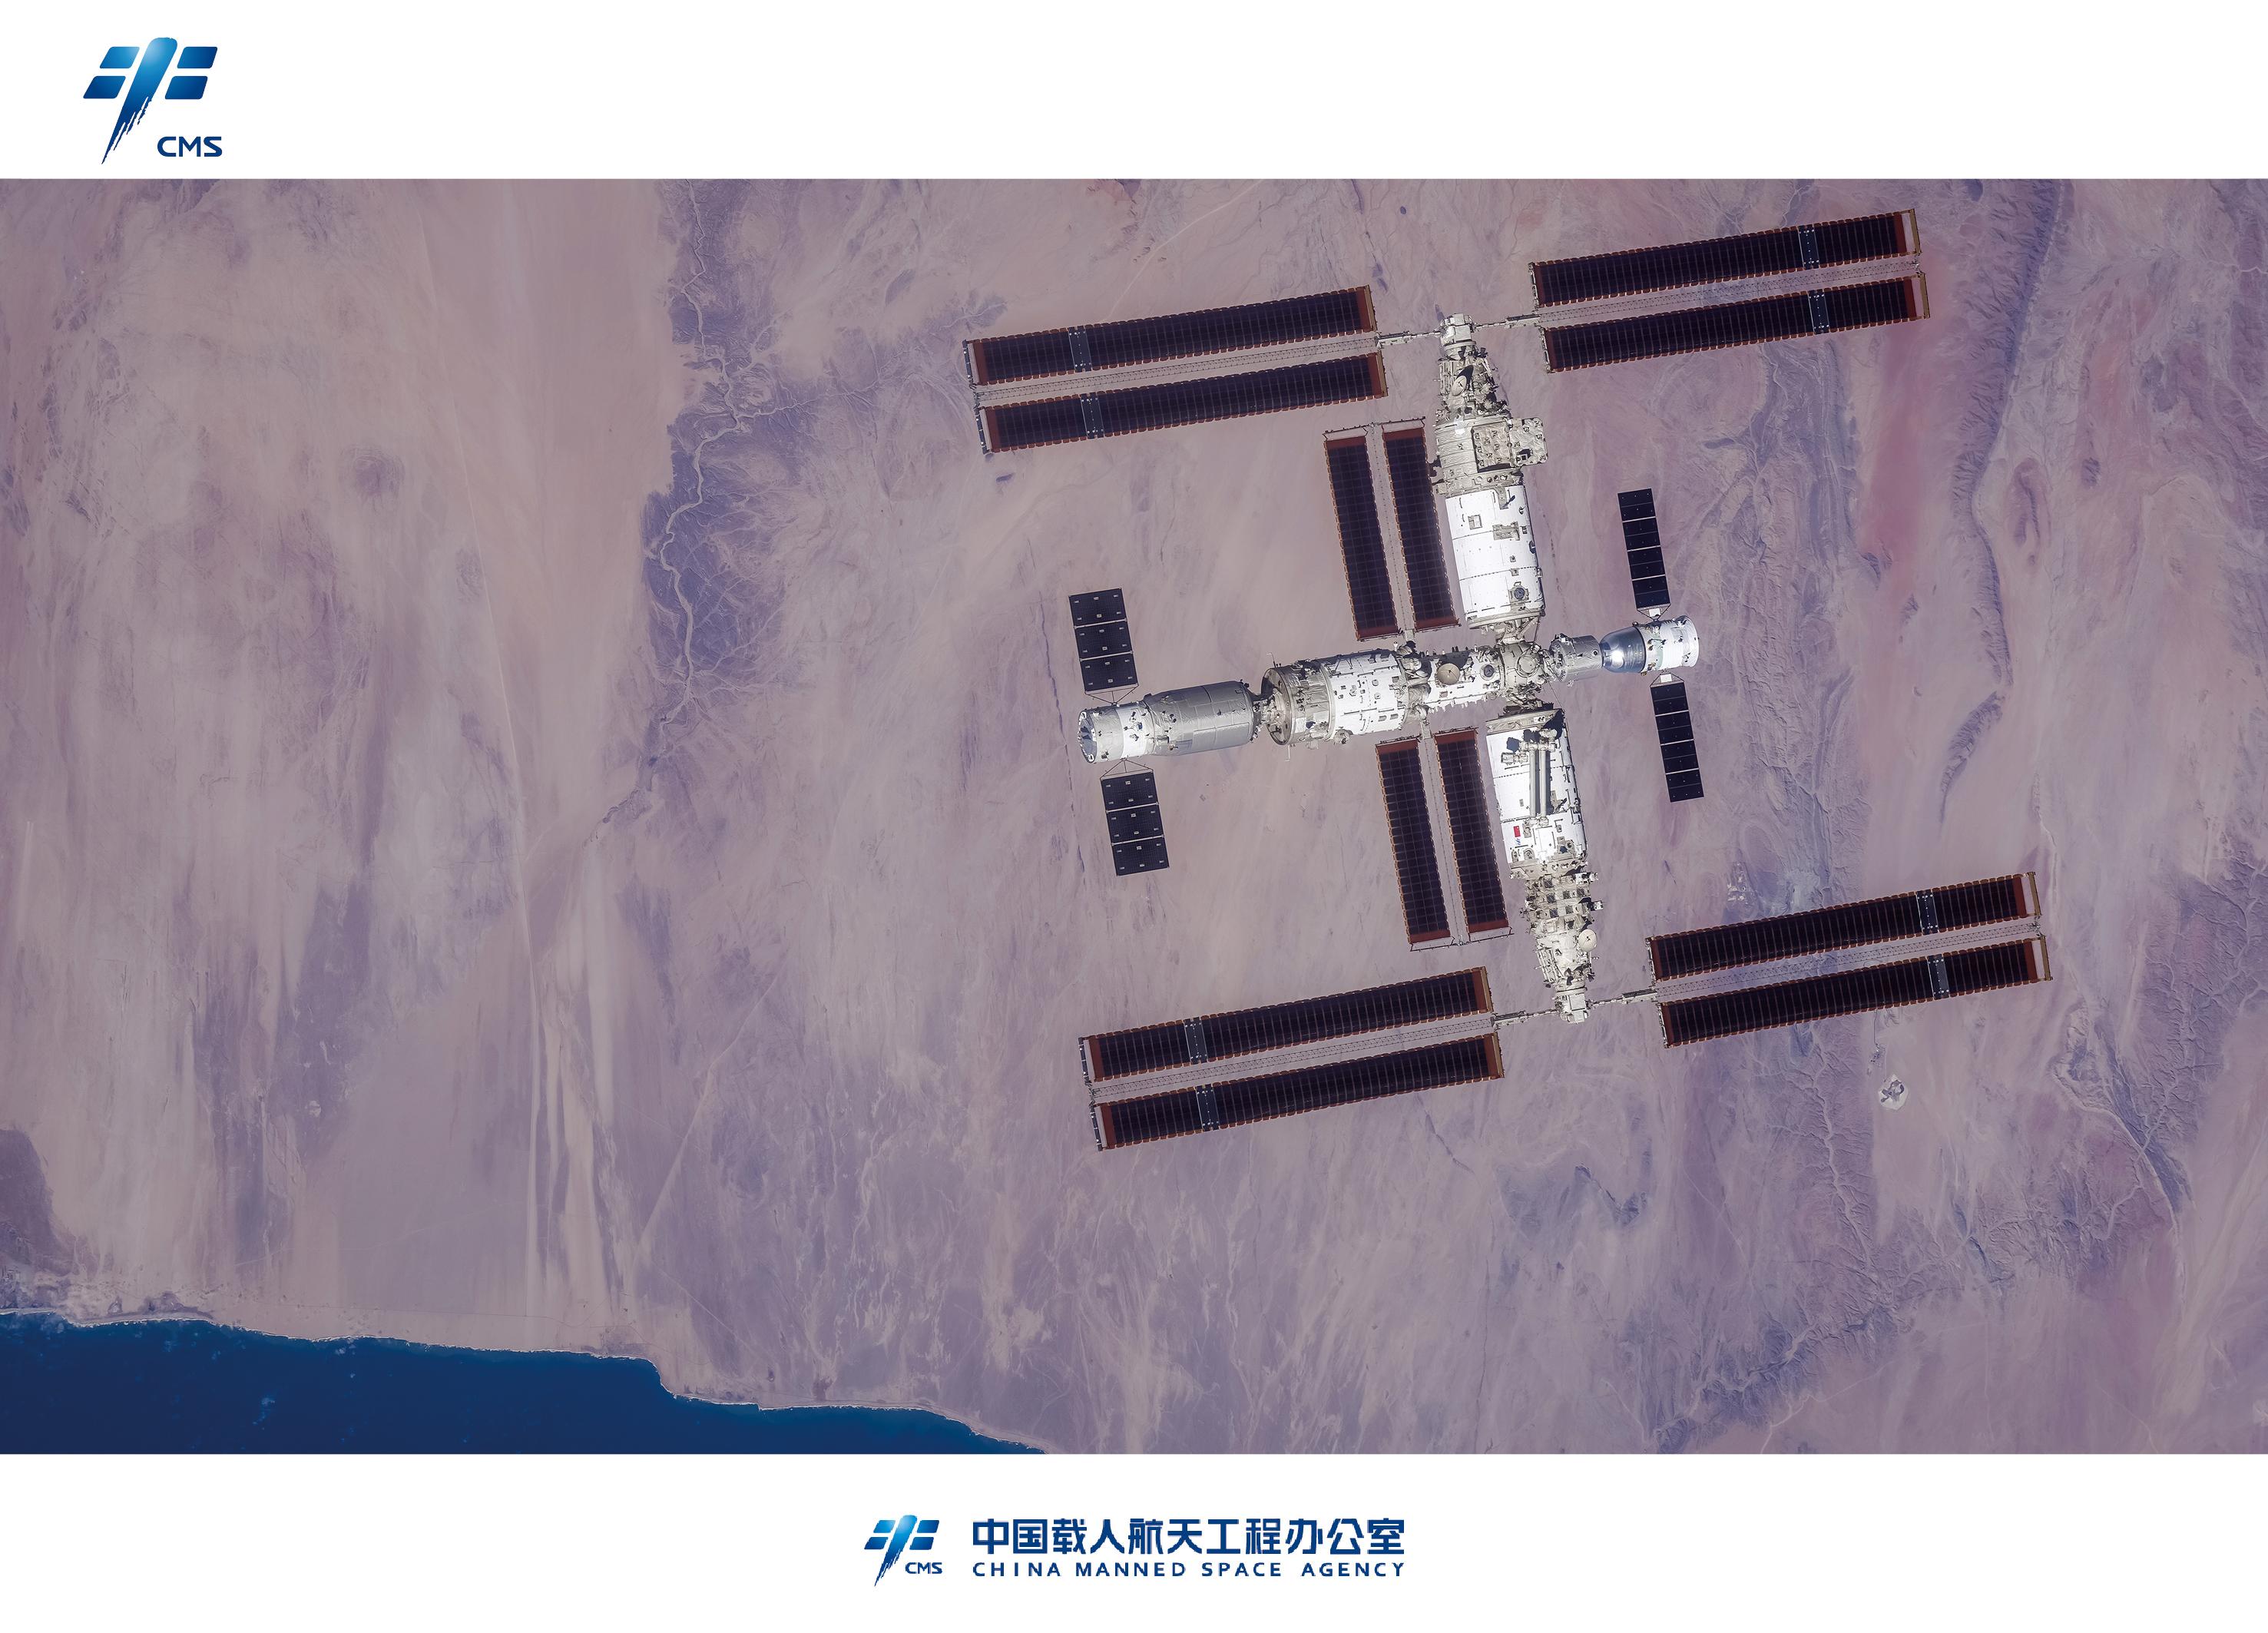 刘易安 的想法: 中国空间站 